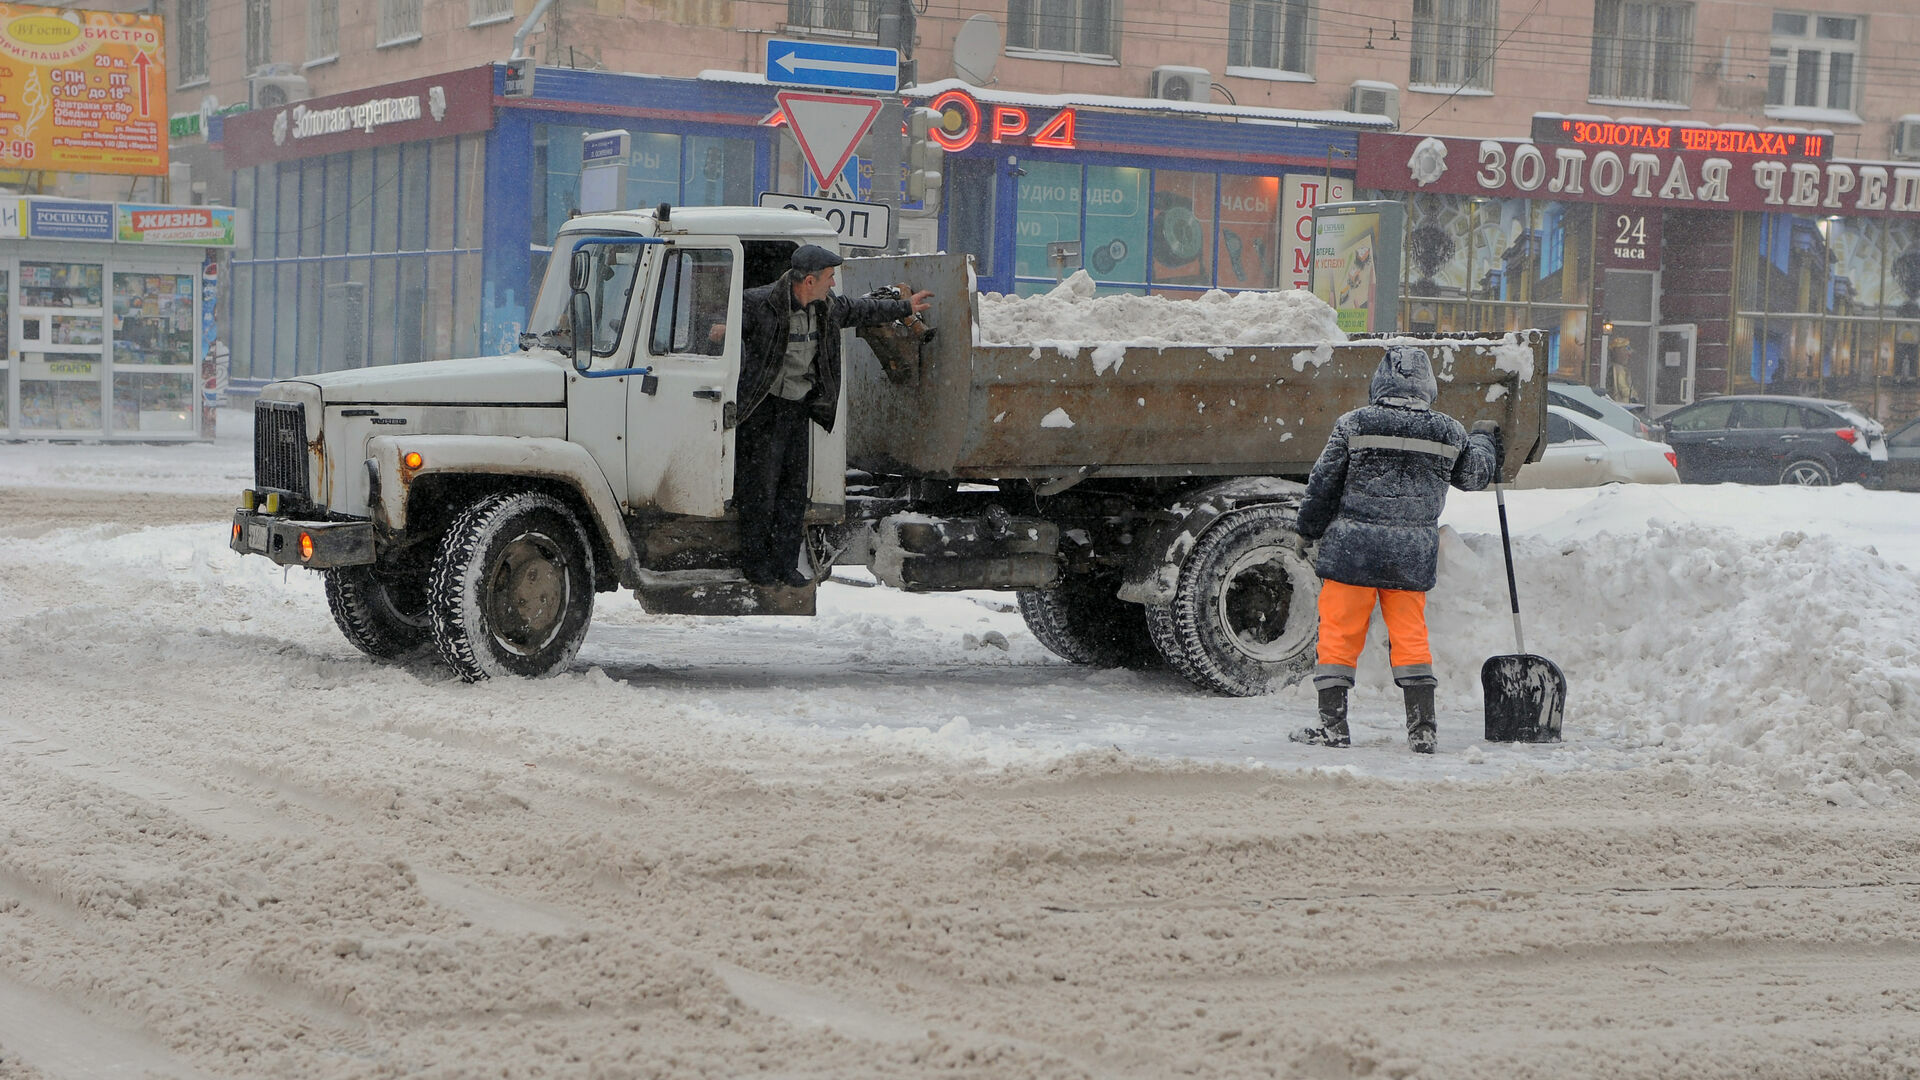 Власти Перми оштрафовали подрядчика на 3,4 миллиона рублей за плохую уборку улиц